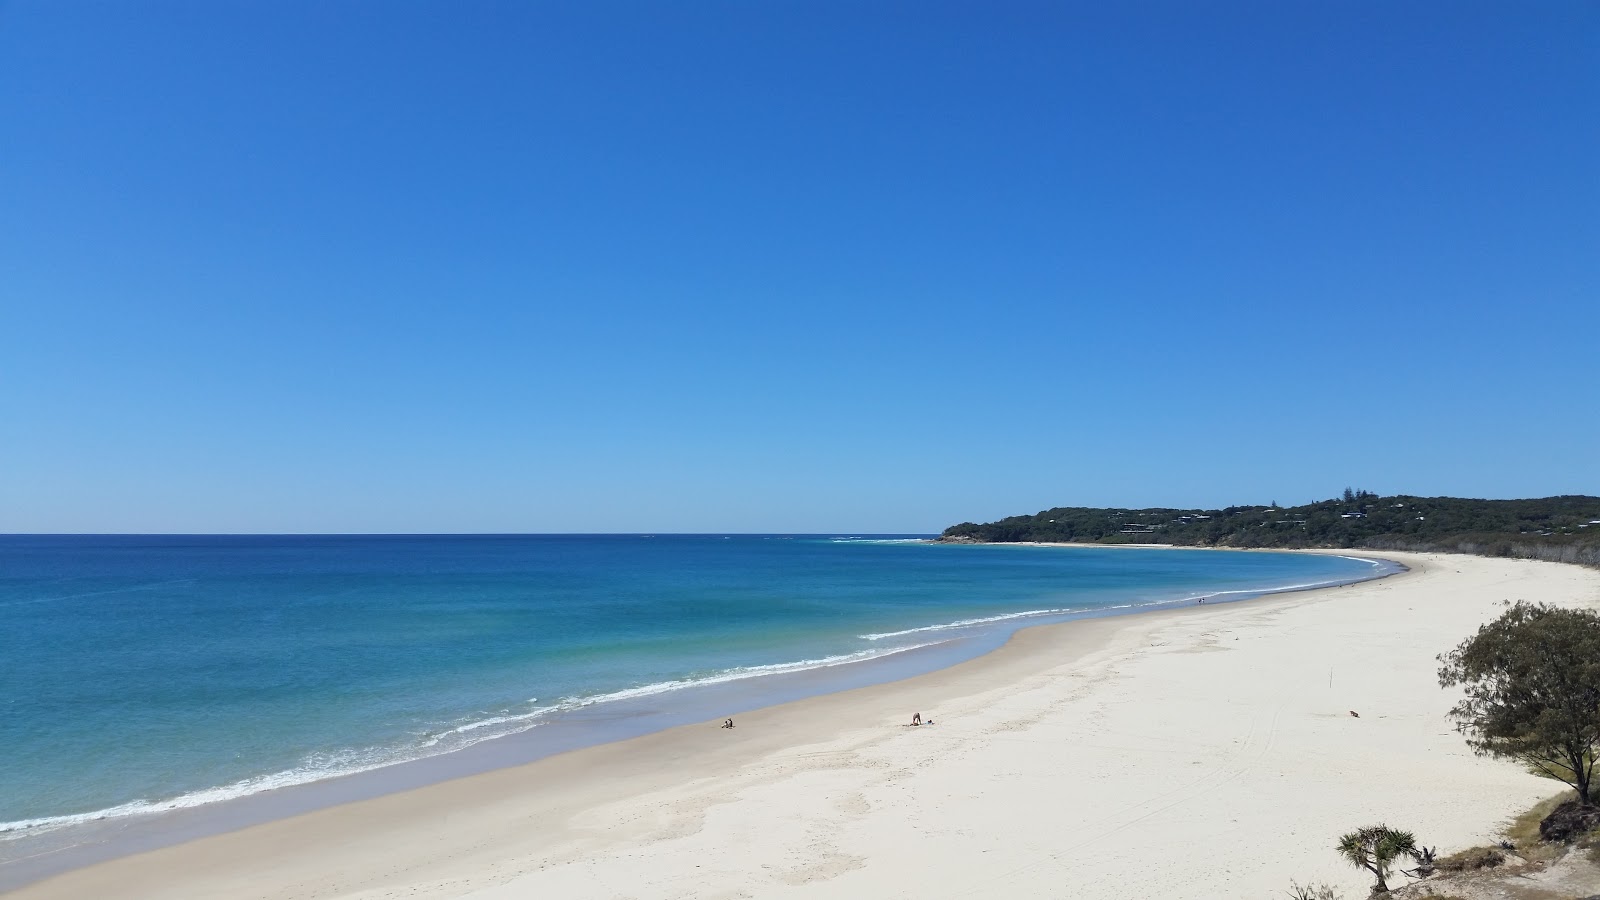 Flinders Beach'in fotoğrafı parlak ince kum yüzey ile